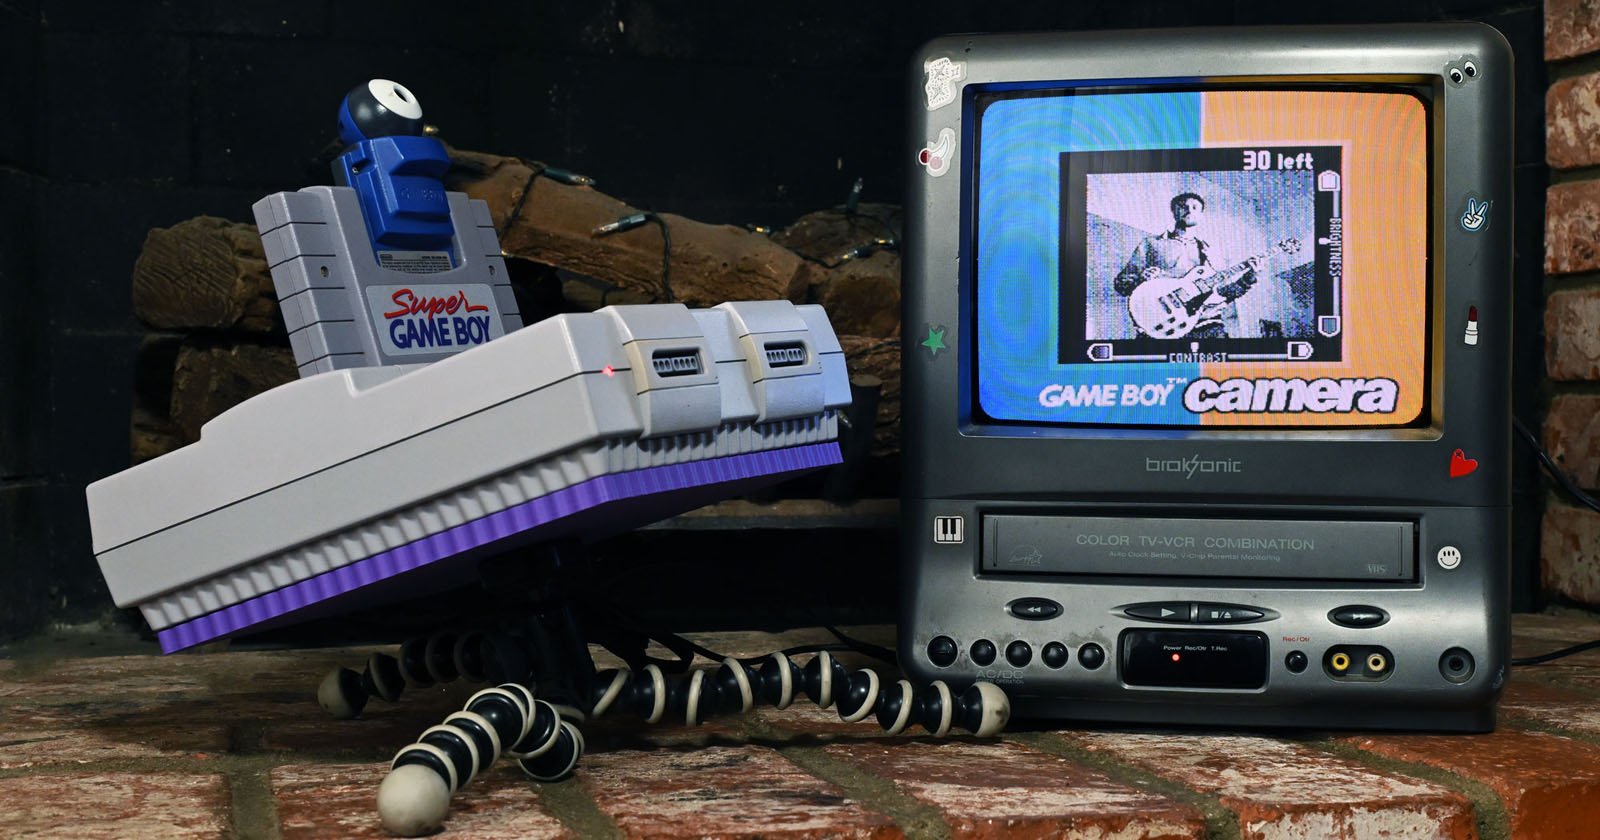 תושבת סופר נינטנדו לחצובה עבור מצלמת Game Boy 